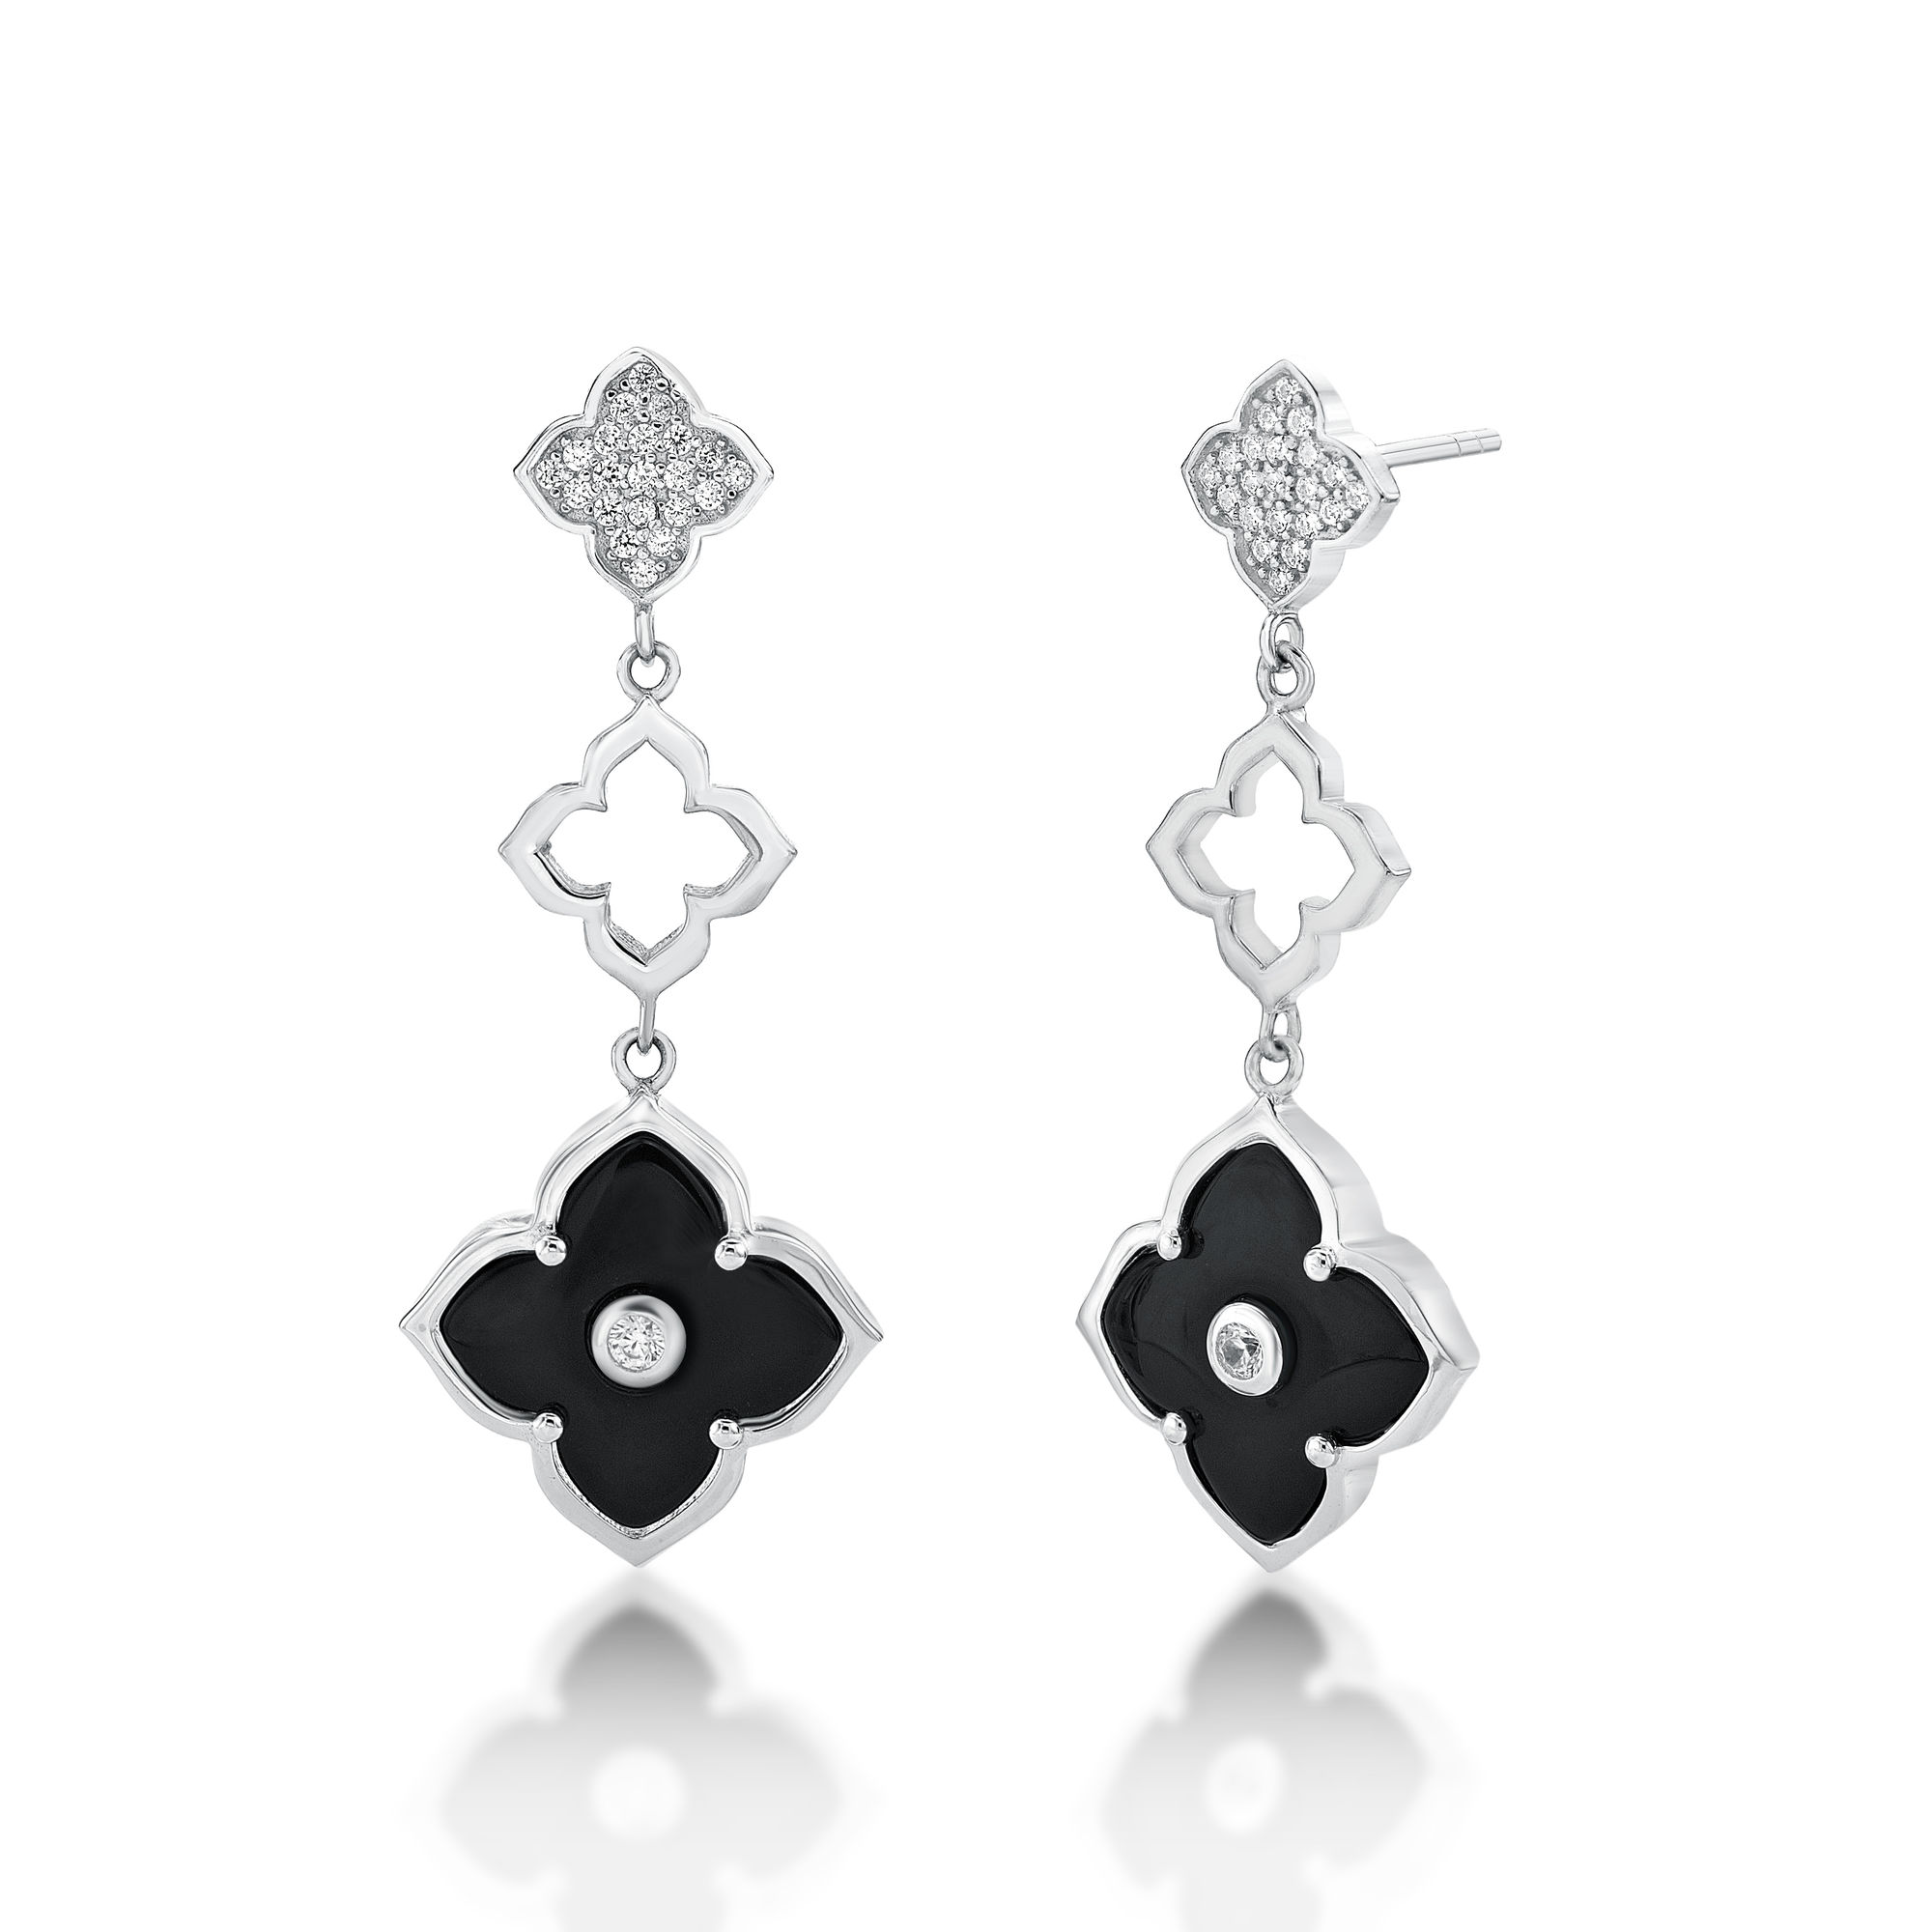 48639-earrings-fashion-jewelry-sterling-silver-48639-2.jpg